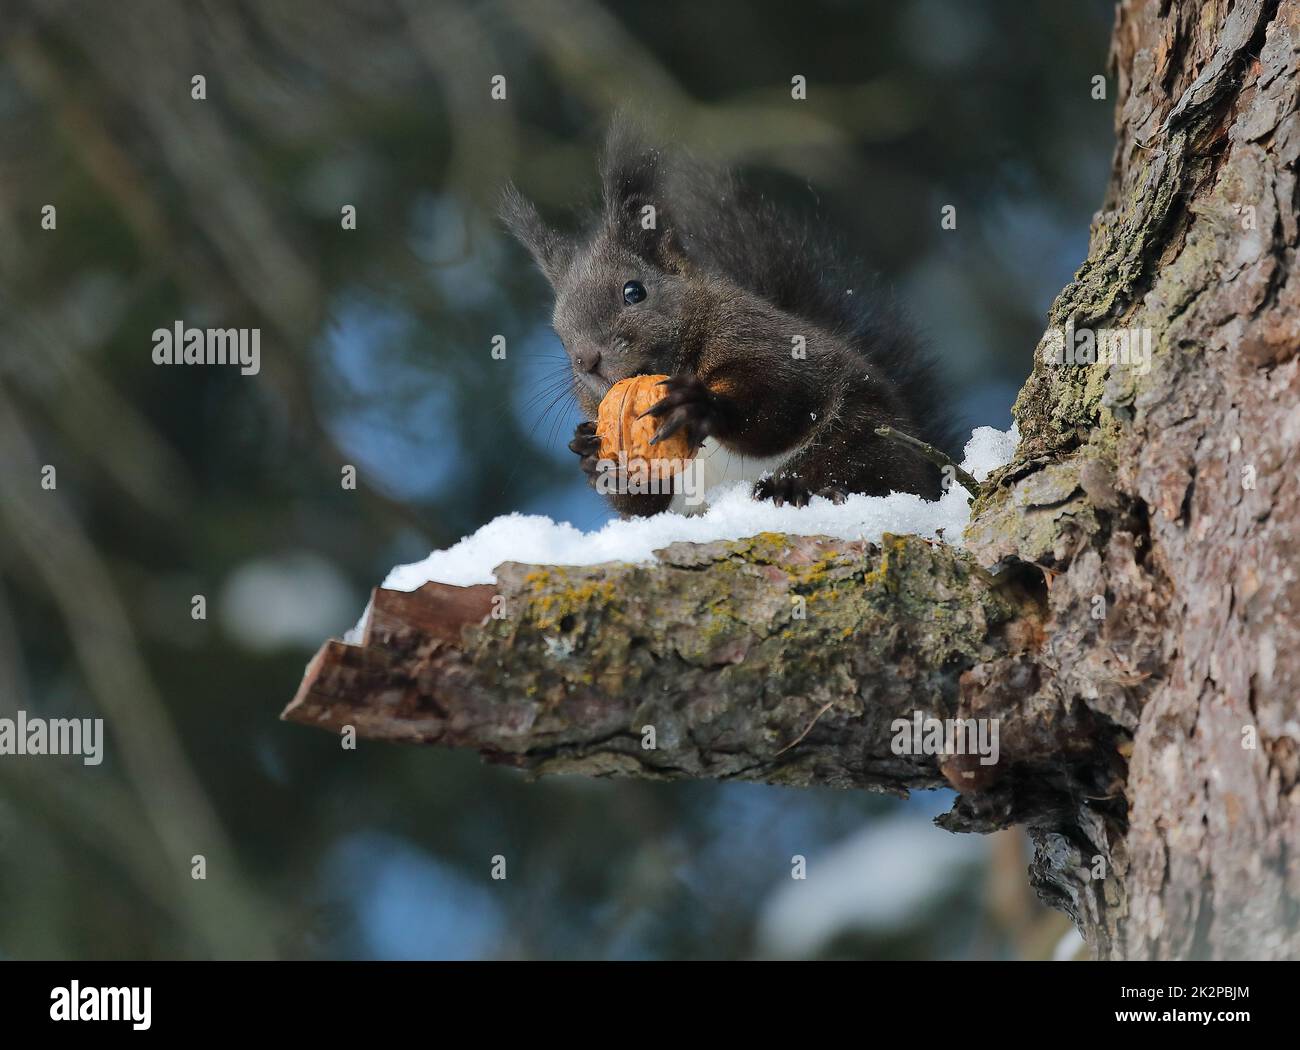 Eichhörnchen - Sciurus vulgaris - auf einem Baum, der eine Nuss isst Stockfoto